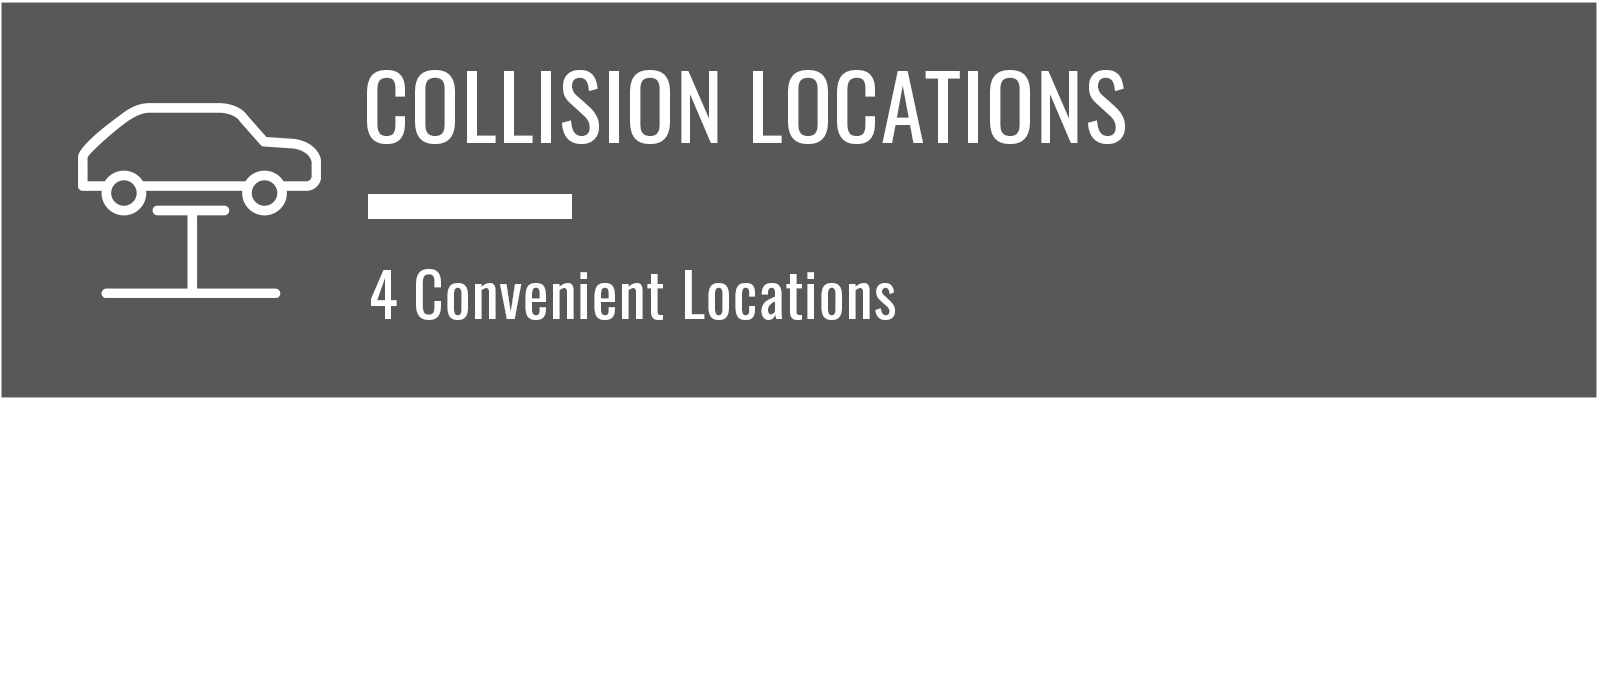 4 Convenient Locations